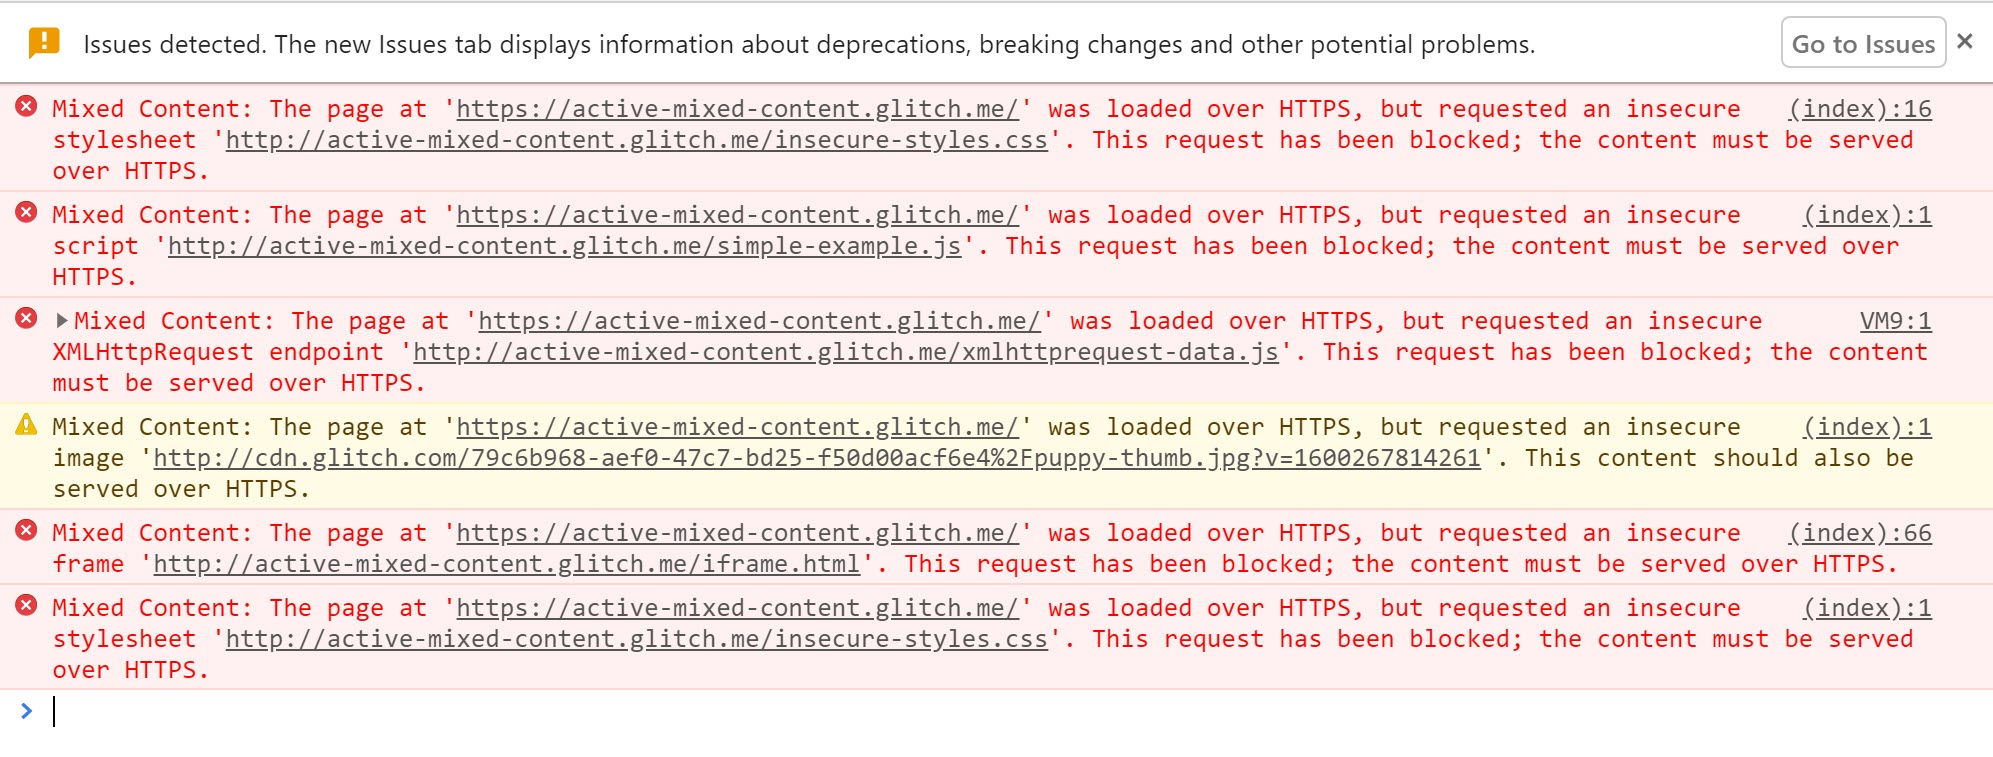 Công cụ của Chrome cho nhà phát triển hiển thị các cảnh báo xuất hiện khi nội dung hỗn hợp đang hoạt động bị chặn